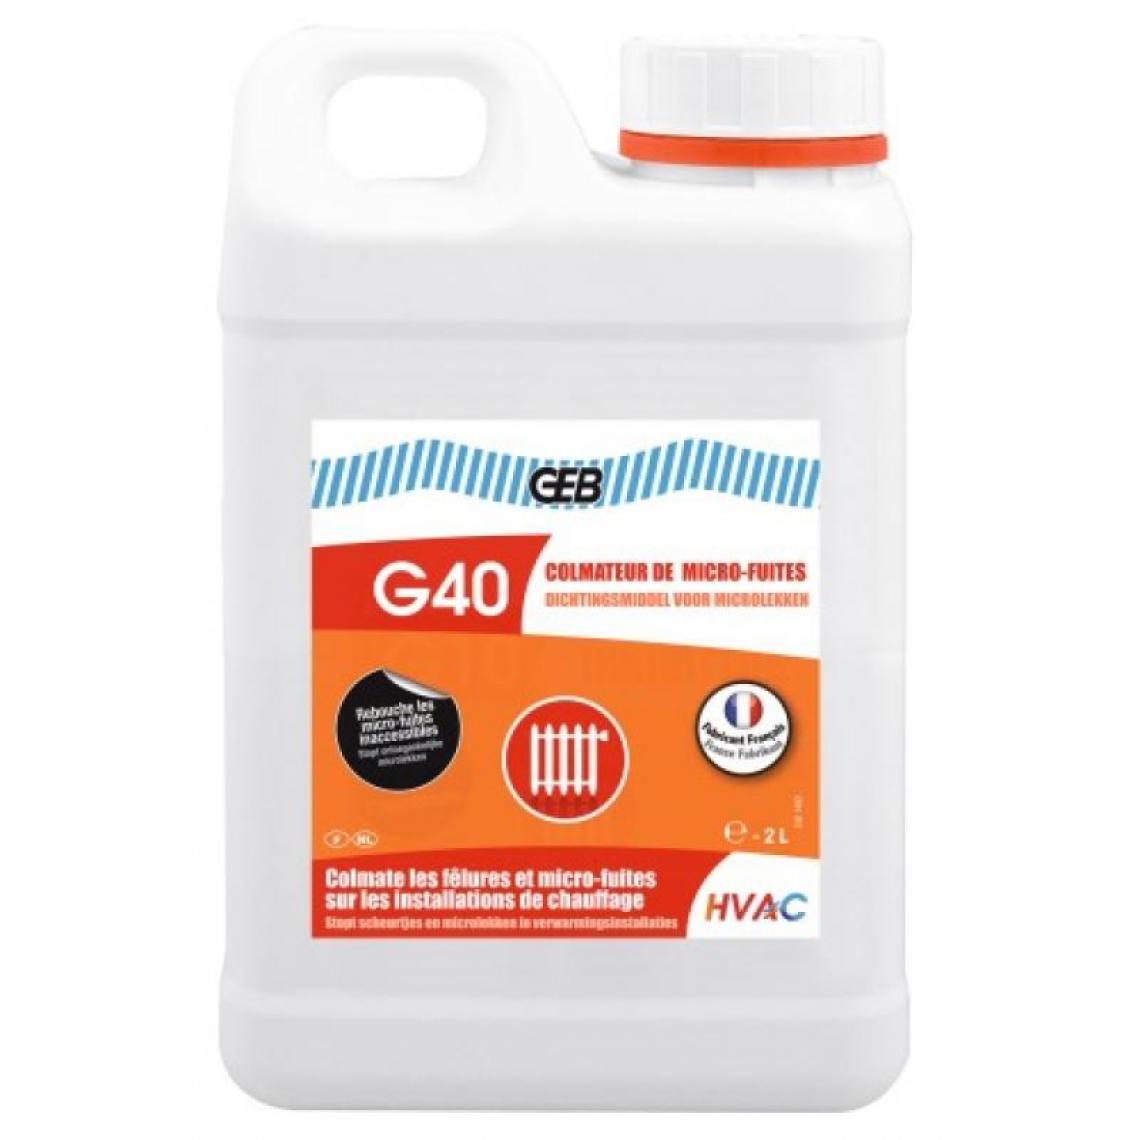 Geb - Produit de colmatage de micro-fuites G40, bidon de 2 litres - Mastic, silicone, joint